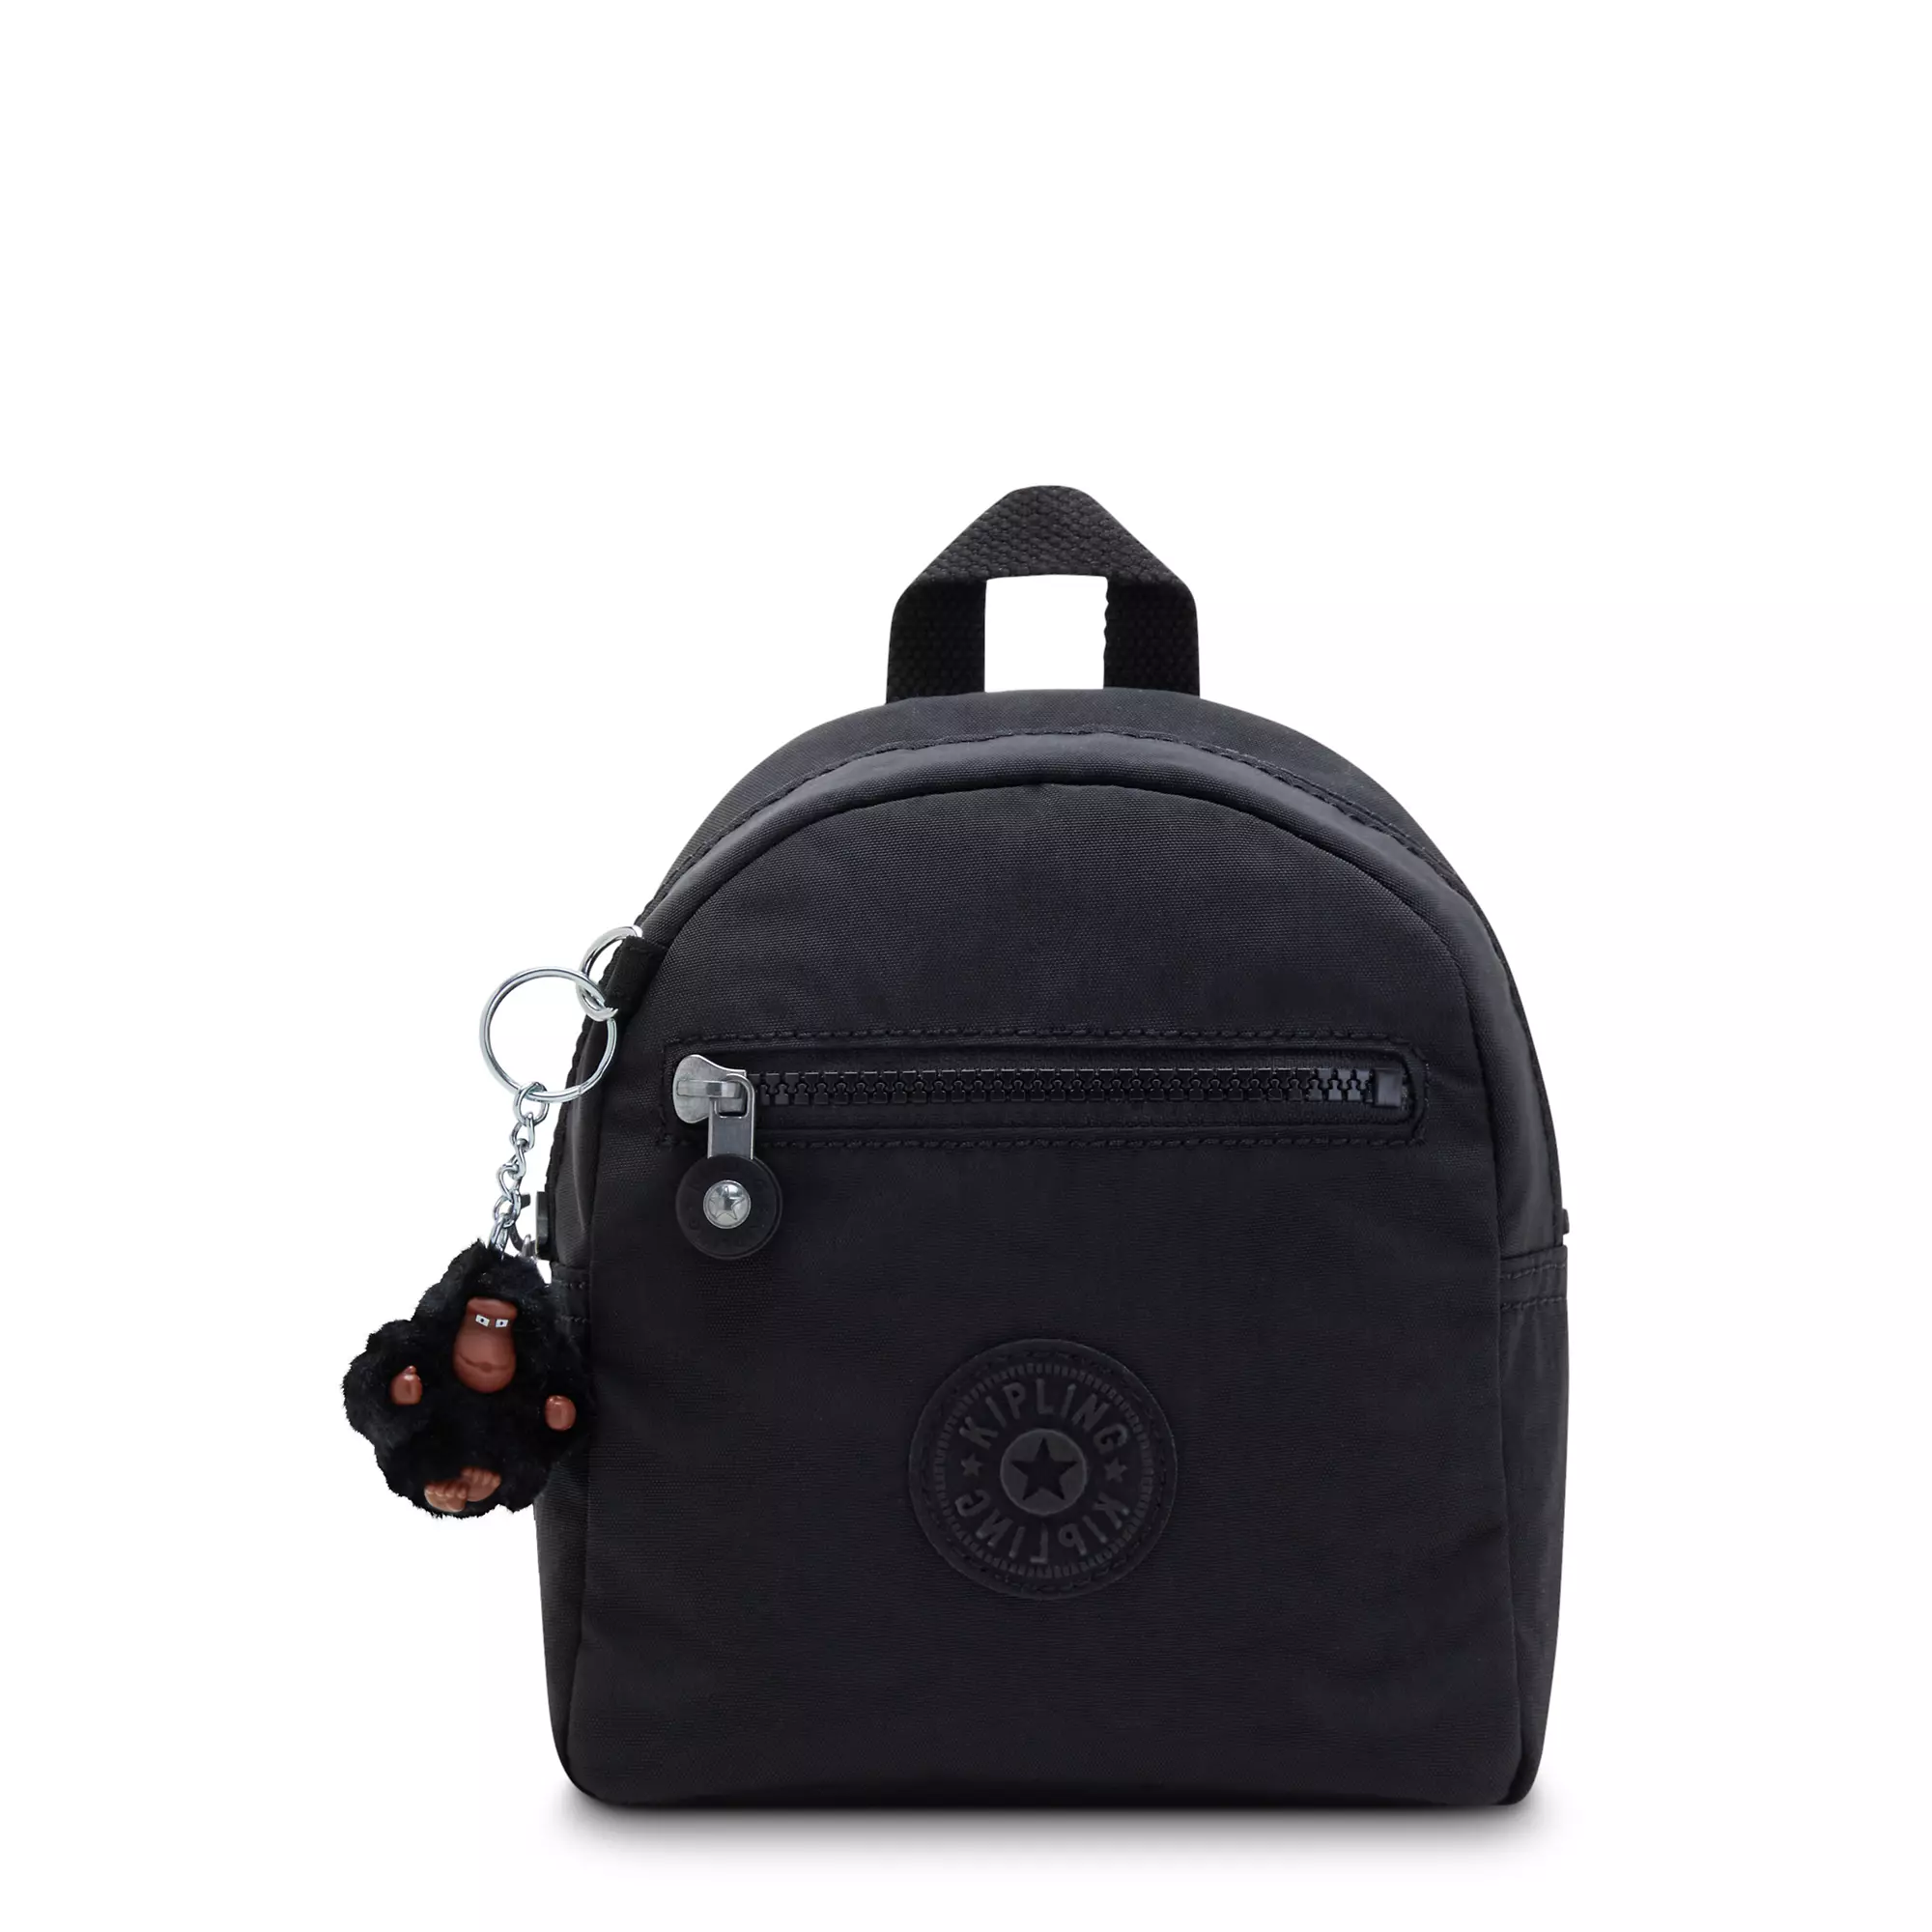 Winnifred Mini Backpack, Black Tonal, large-zoomed